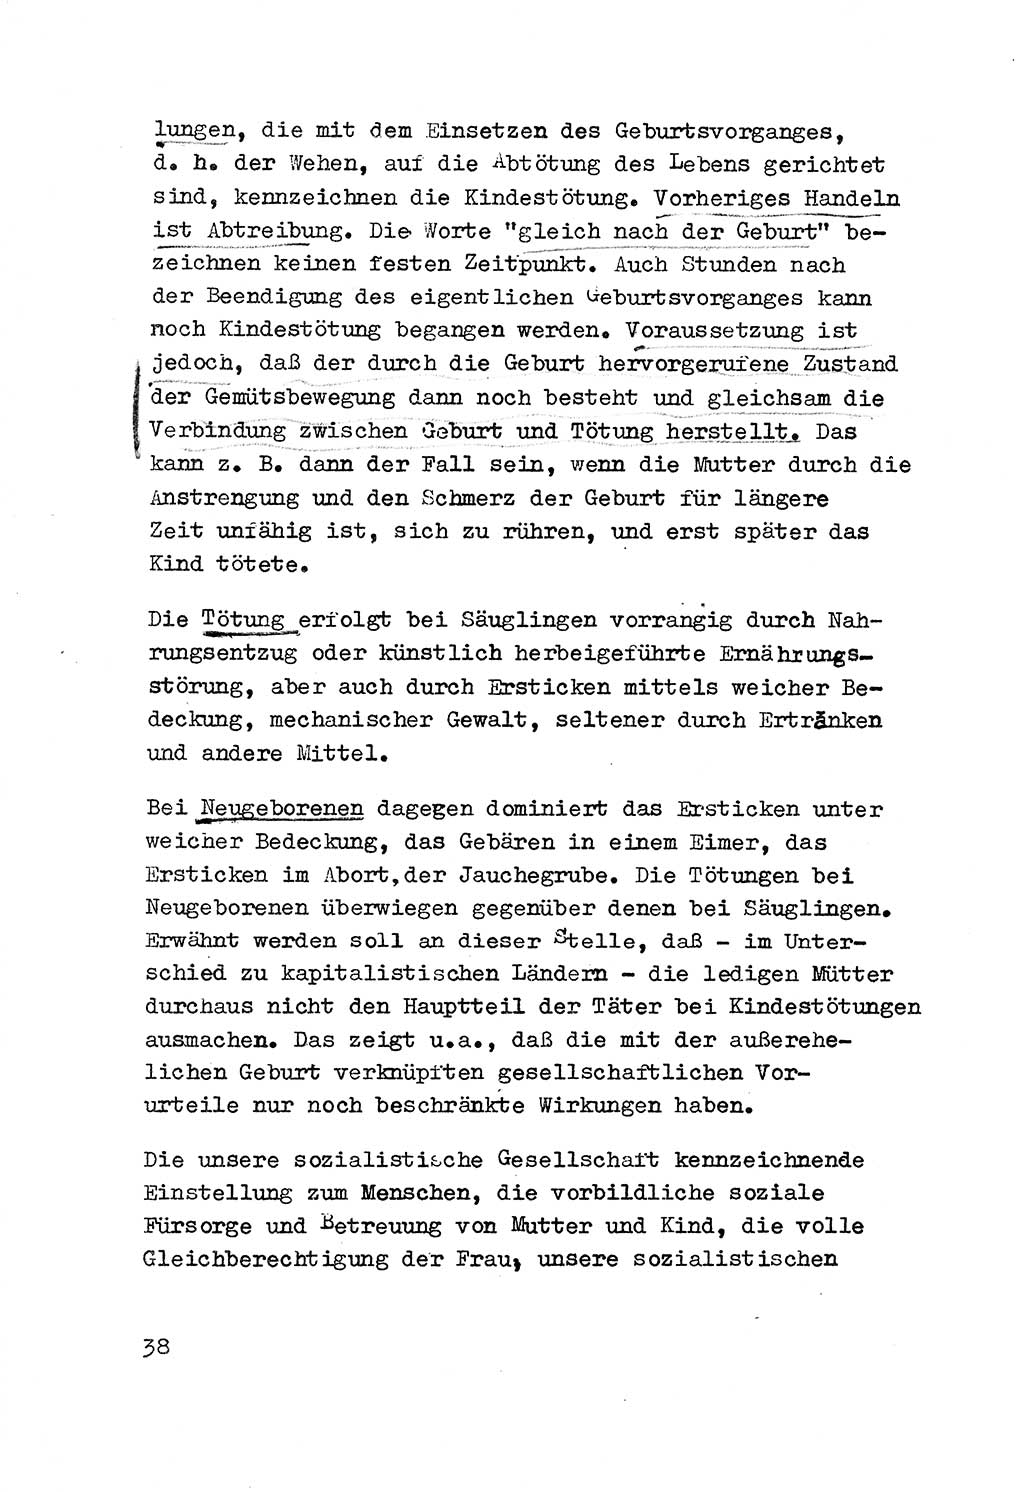 Strafrecht der DDR (Deutsche Demokratische Republik), Besonderer Teil, Lehrmaterial, Heft 3 1969, Seite 38 (Strafr. DDR BT Lehrmat. H. 3 1969, S. 38)